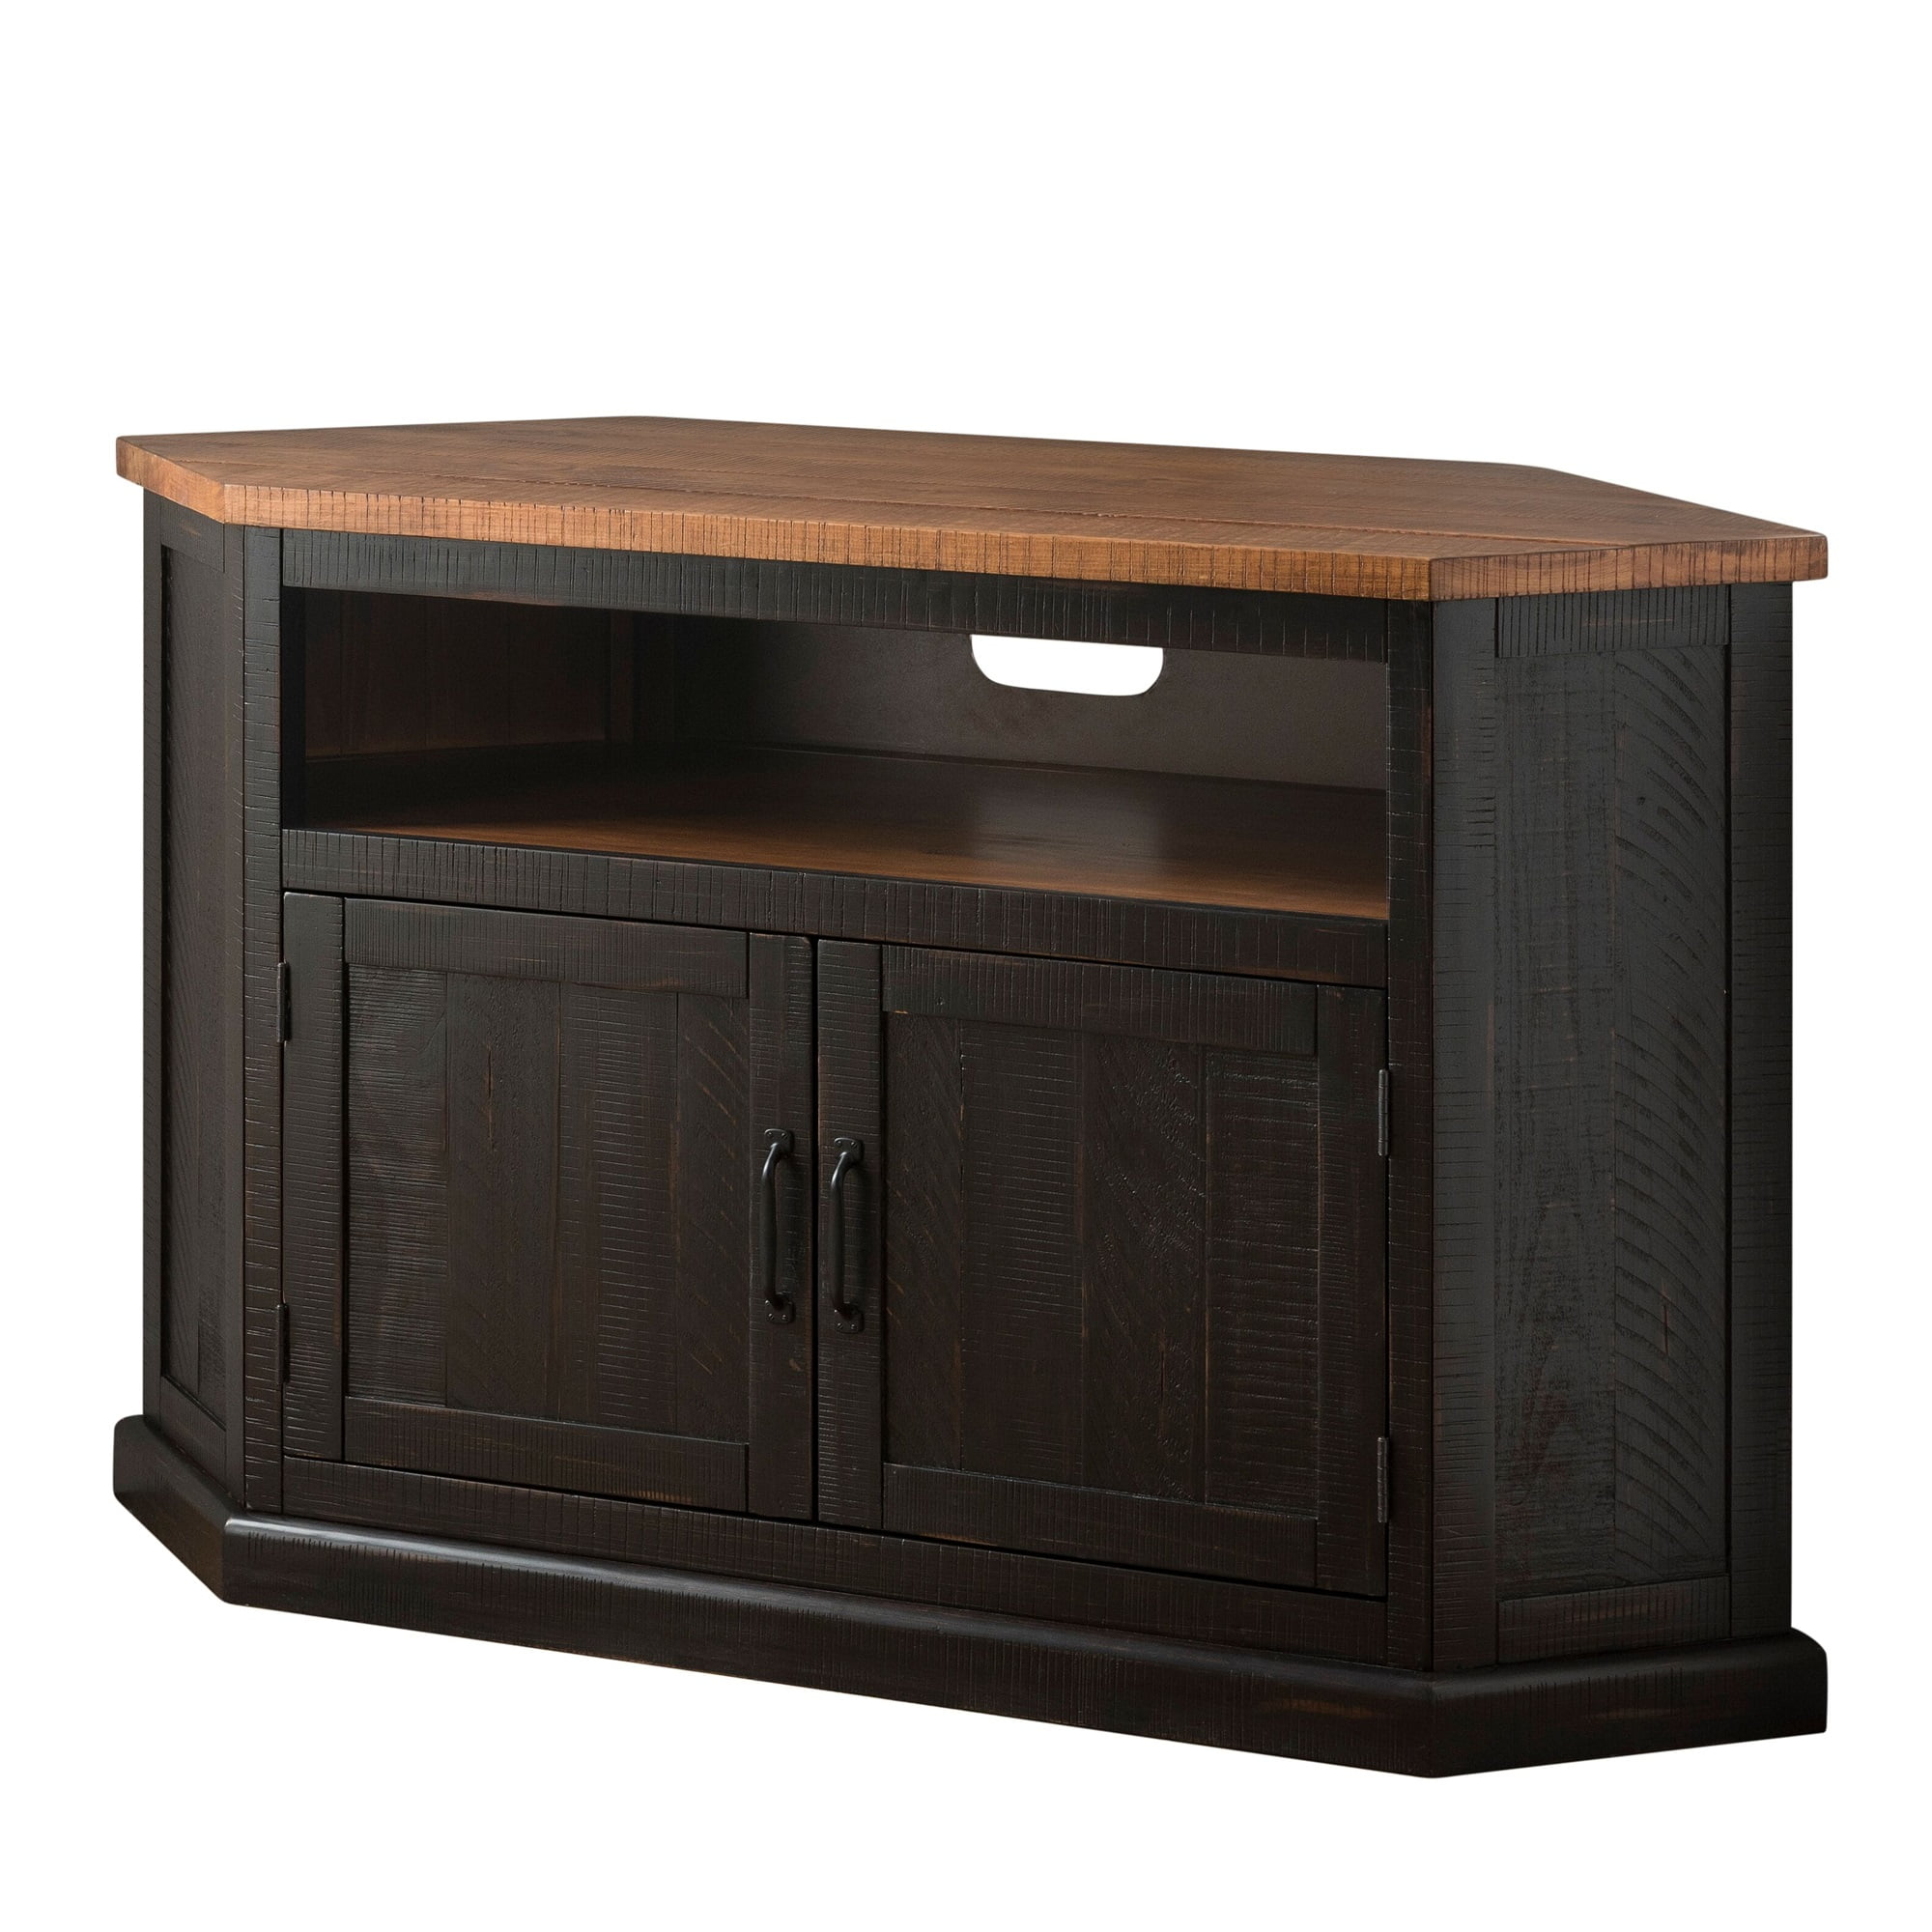 Corner Rustic Pine TV Unit solid wood stand/cabinet walnut wax finish 